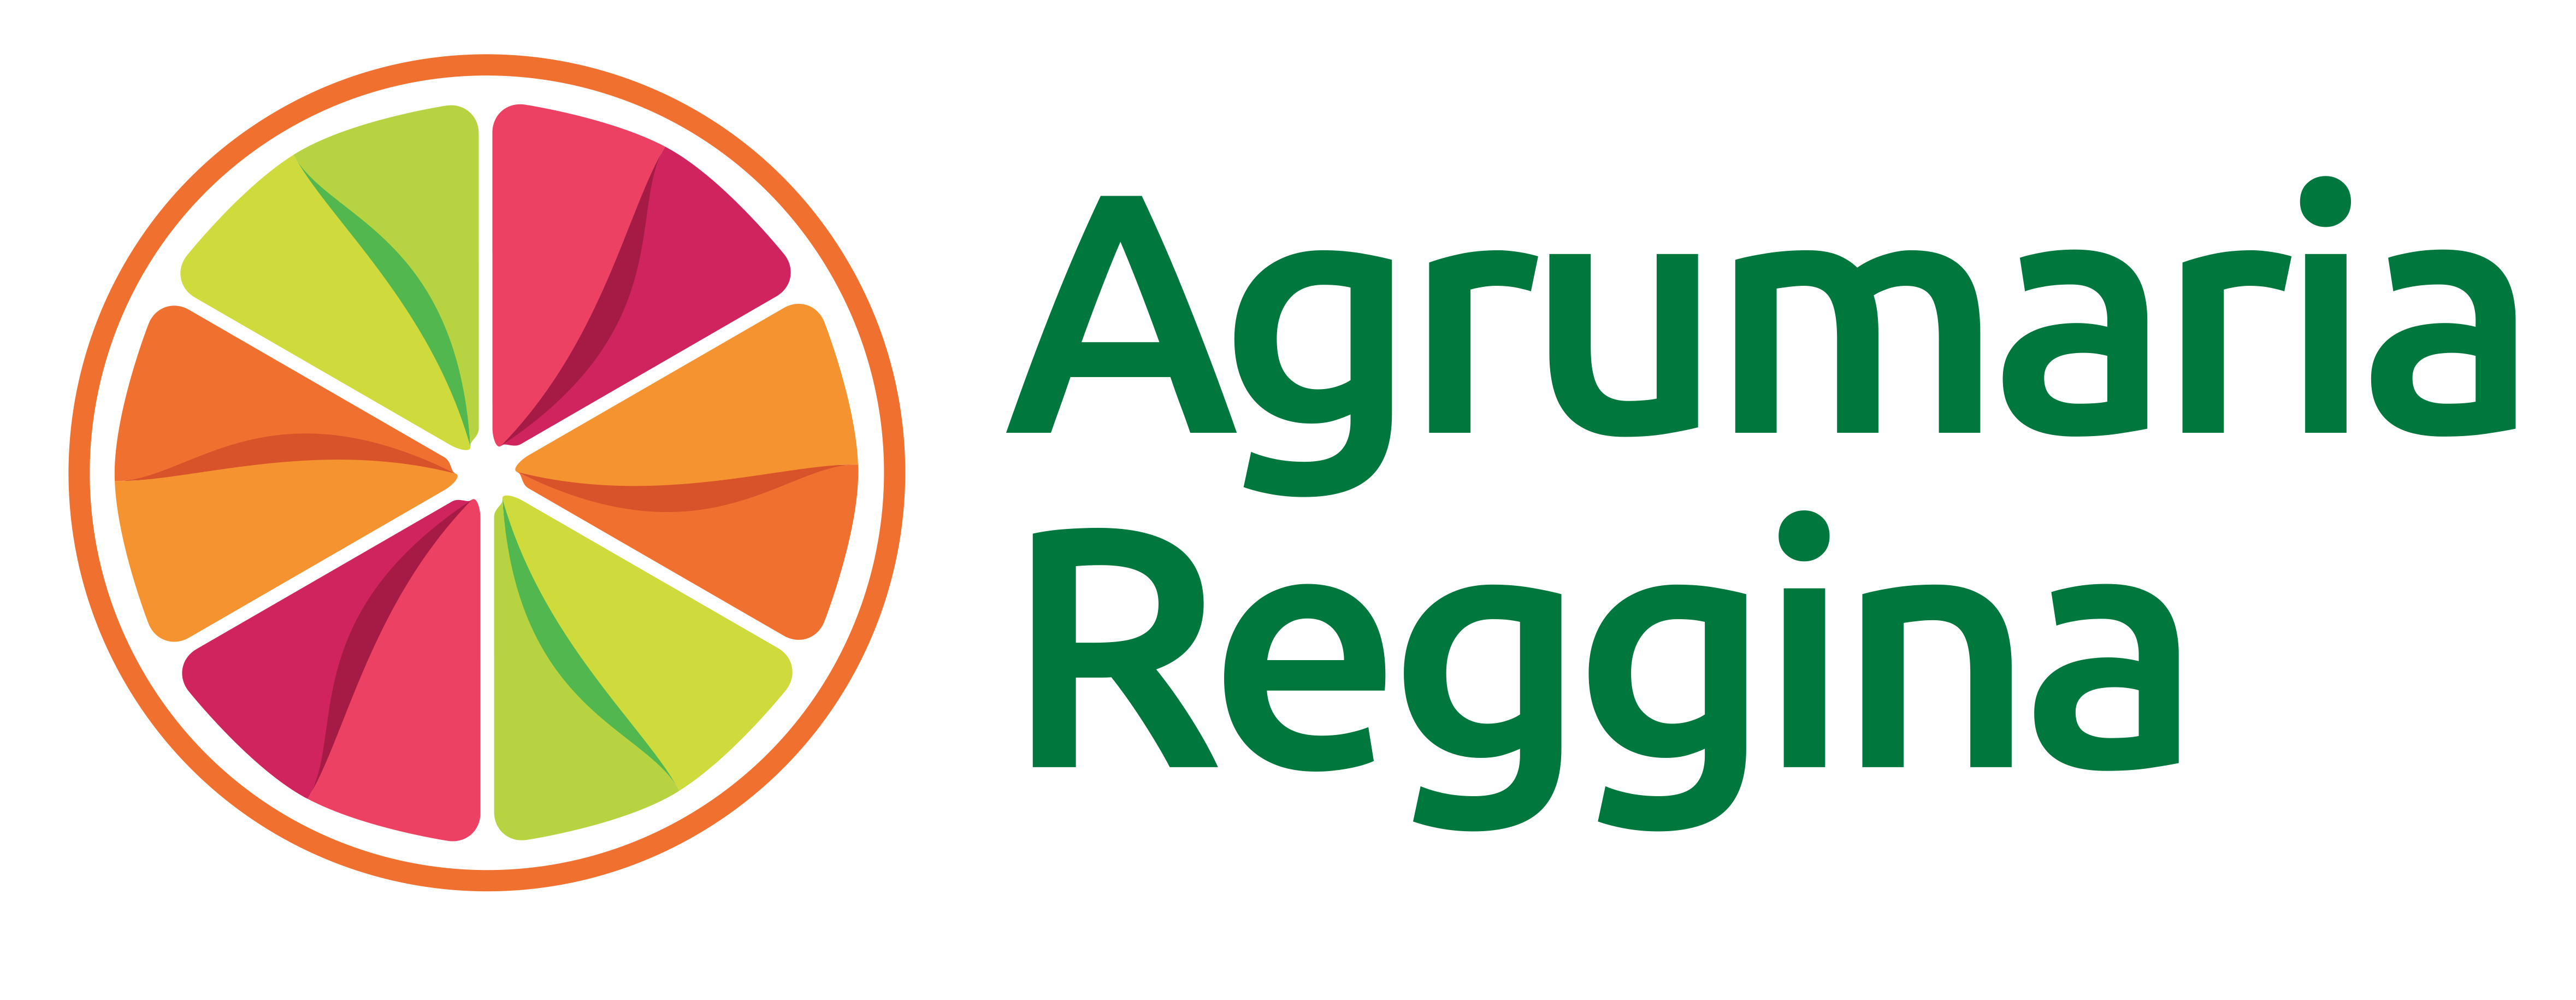 Agrumaria Reggina Srl logo